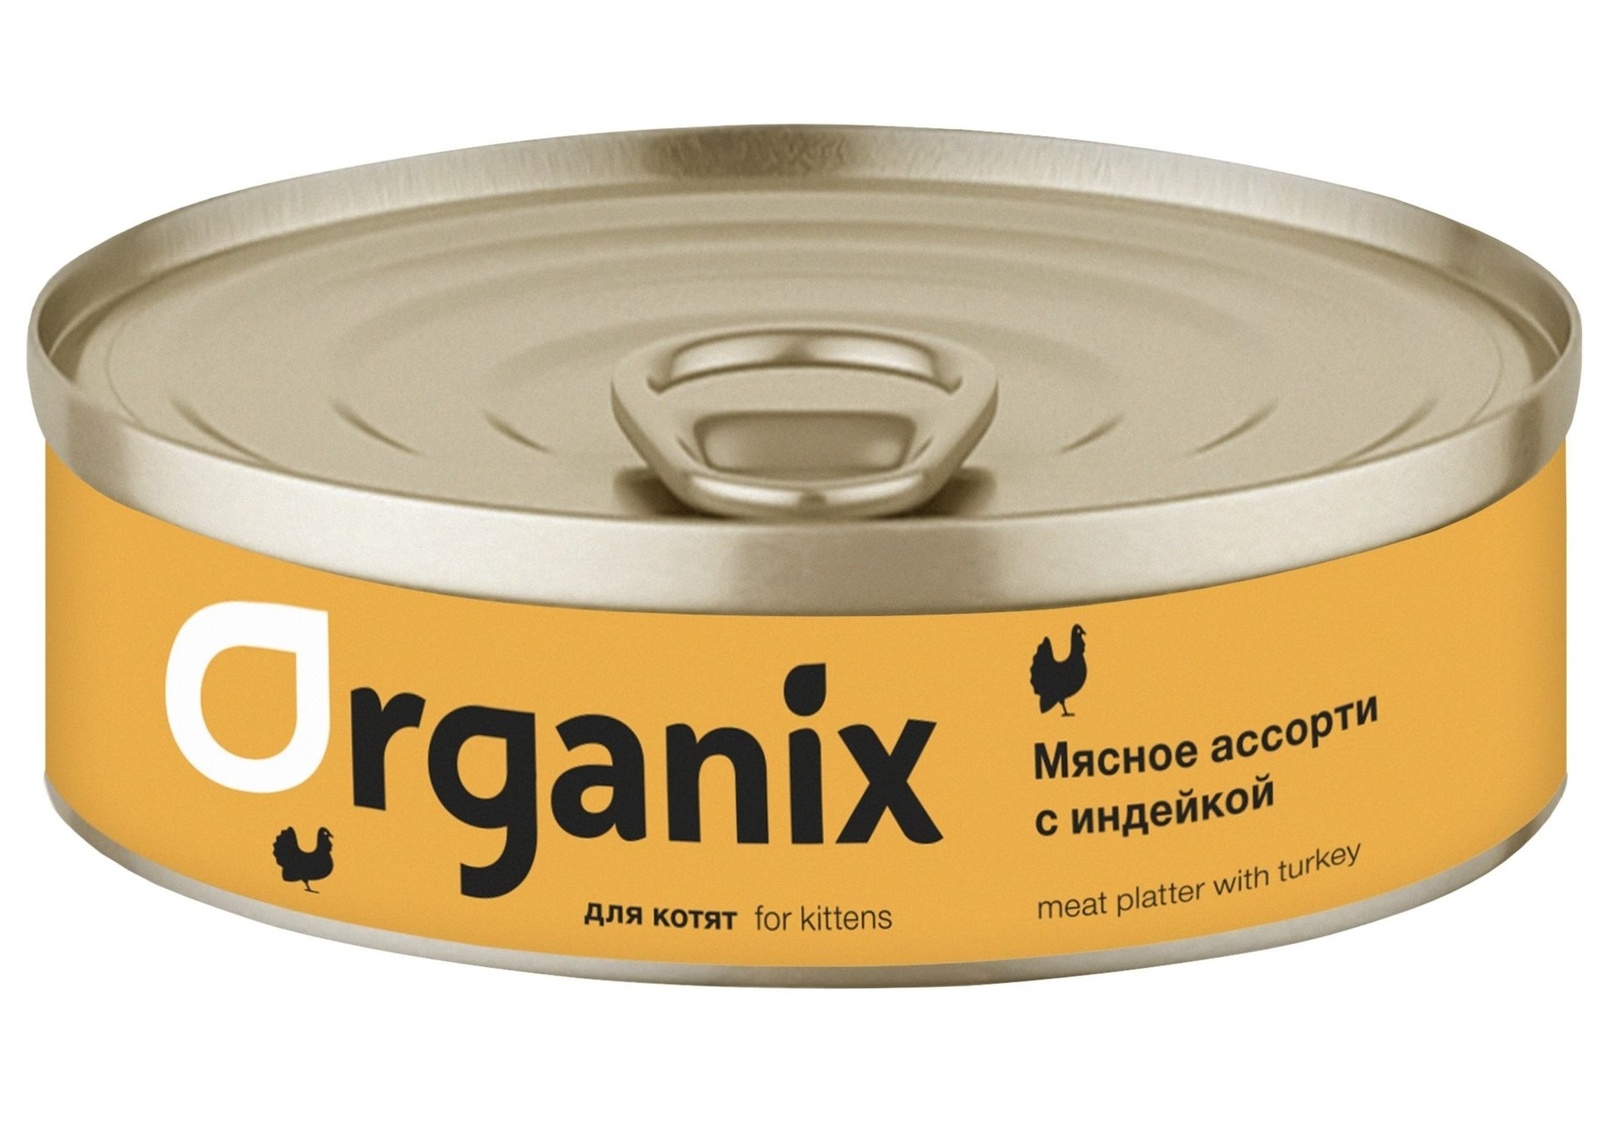 Organix консервы Organix консервы для котят Мясное ассорти с индейкой (100 г) консервы для котят ем без проблем суфле мясное ассорти 100 г